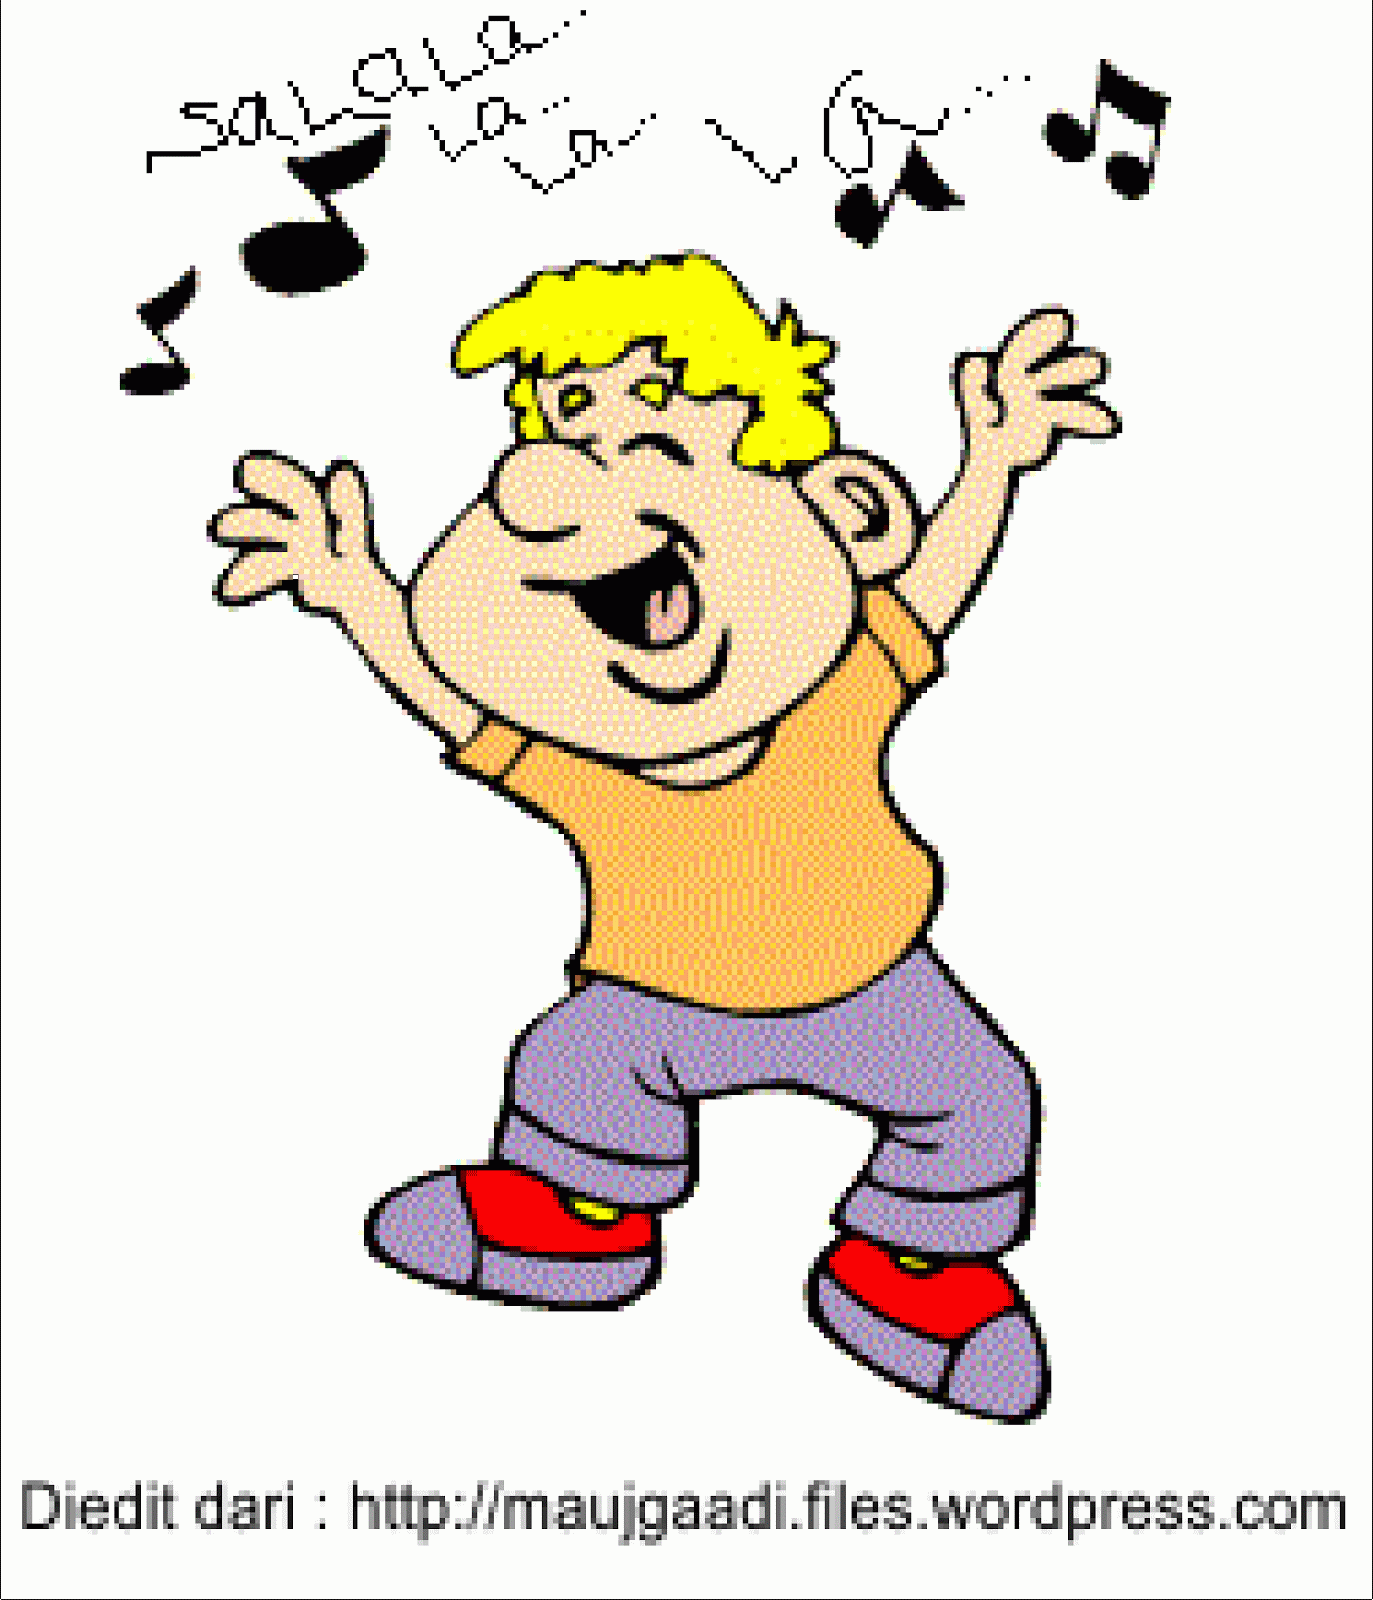 But i like singing. Sing анимация. They are Dancing мультяшный. Гифки действия. I can Dance для дошкольников.